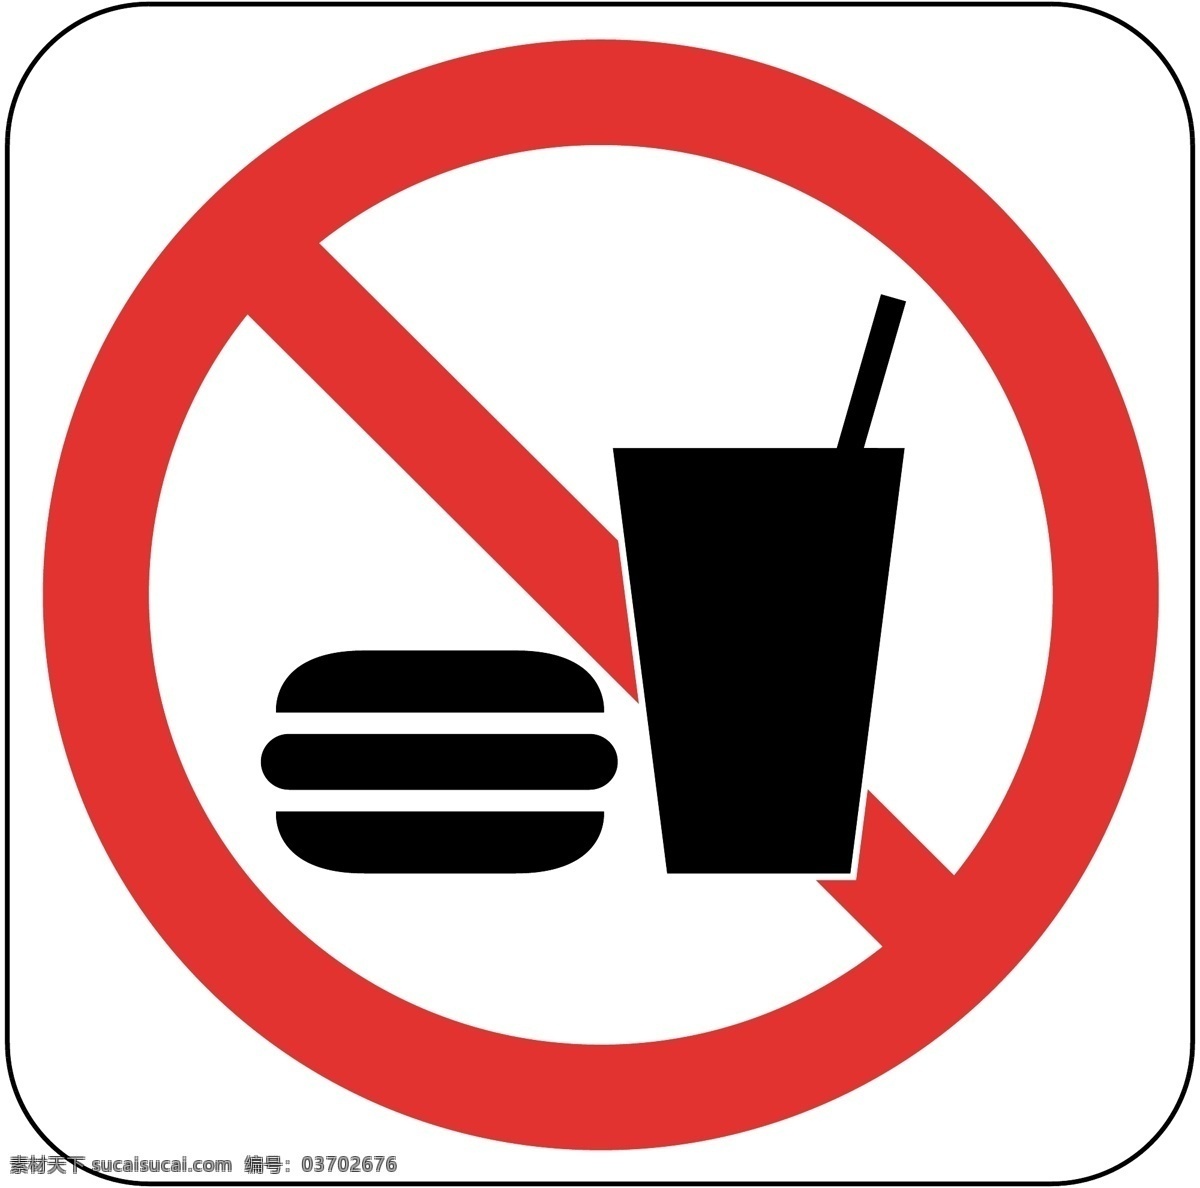 禁止吃东西 禁止进食 非就餐区 禁止吃零食 禁止 标志图标 公共标识标志